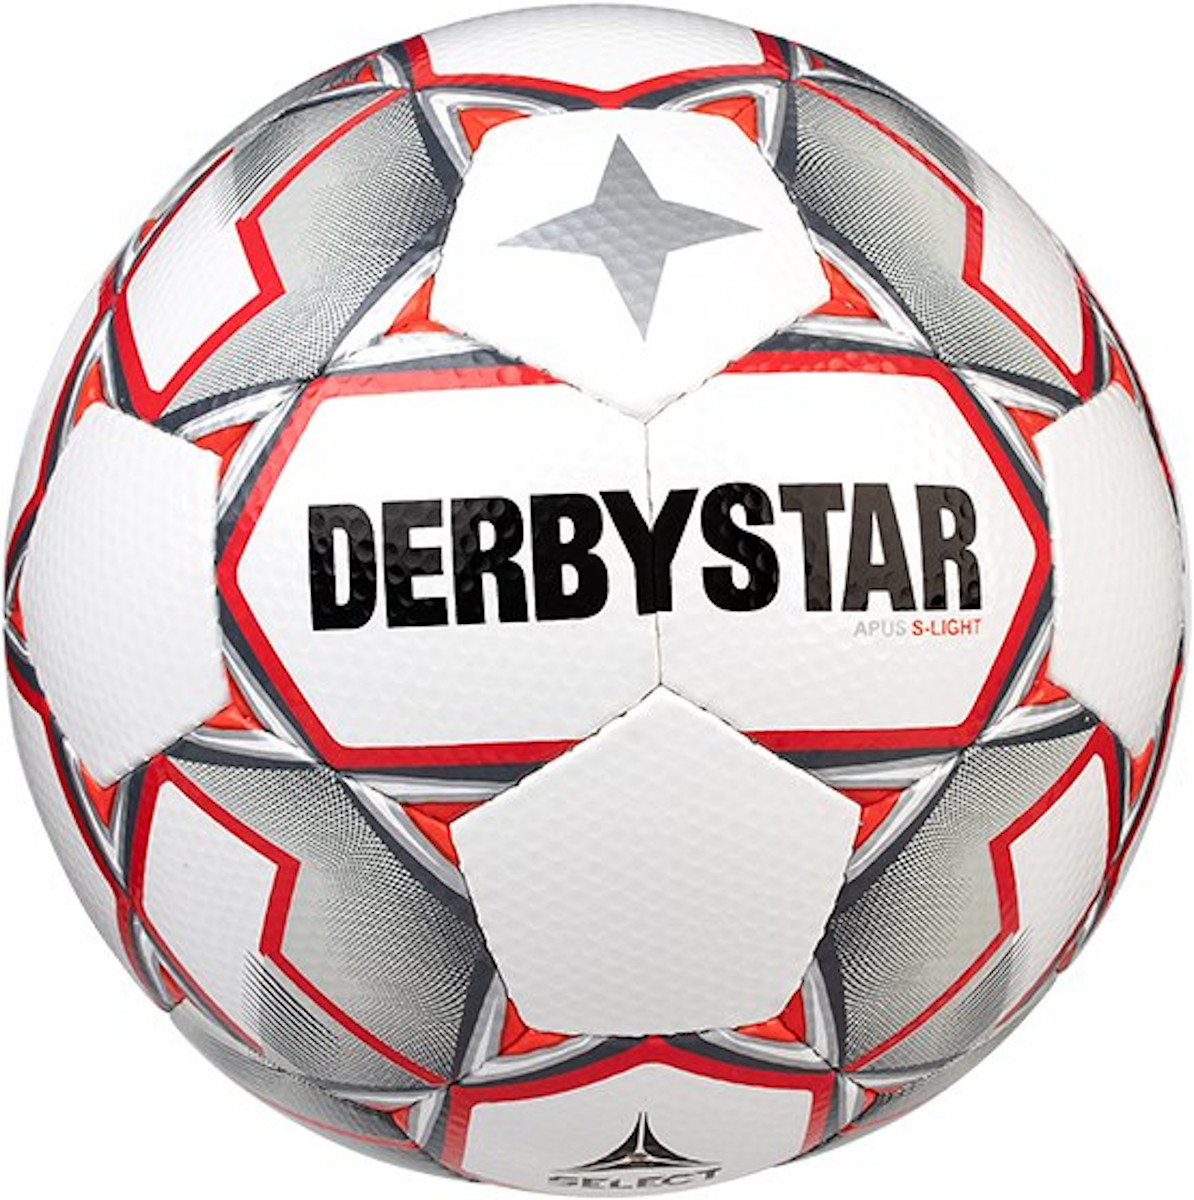 Μπάλα Derbystar Apus S-Light v20 290 grams Lightball